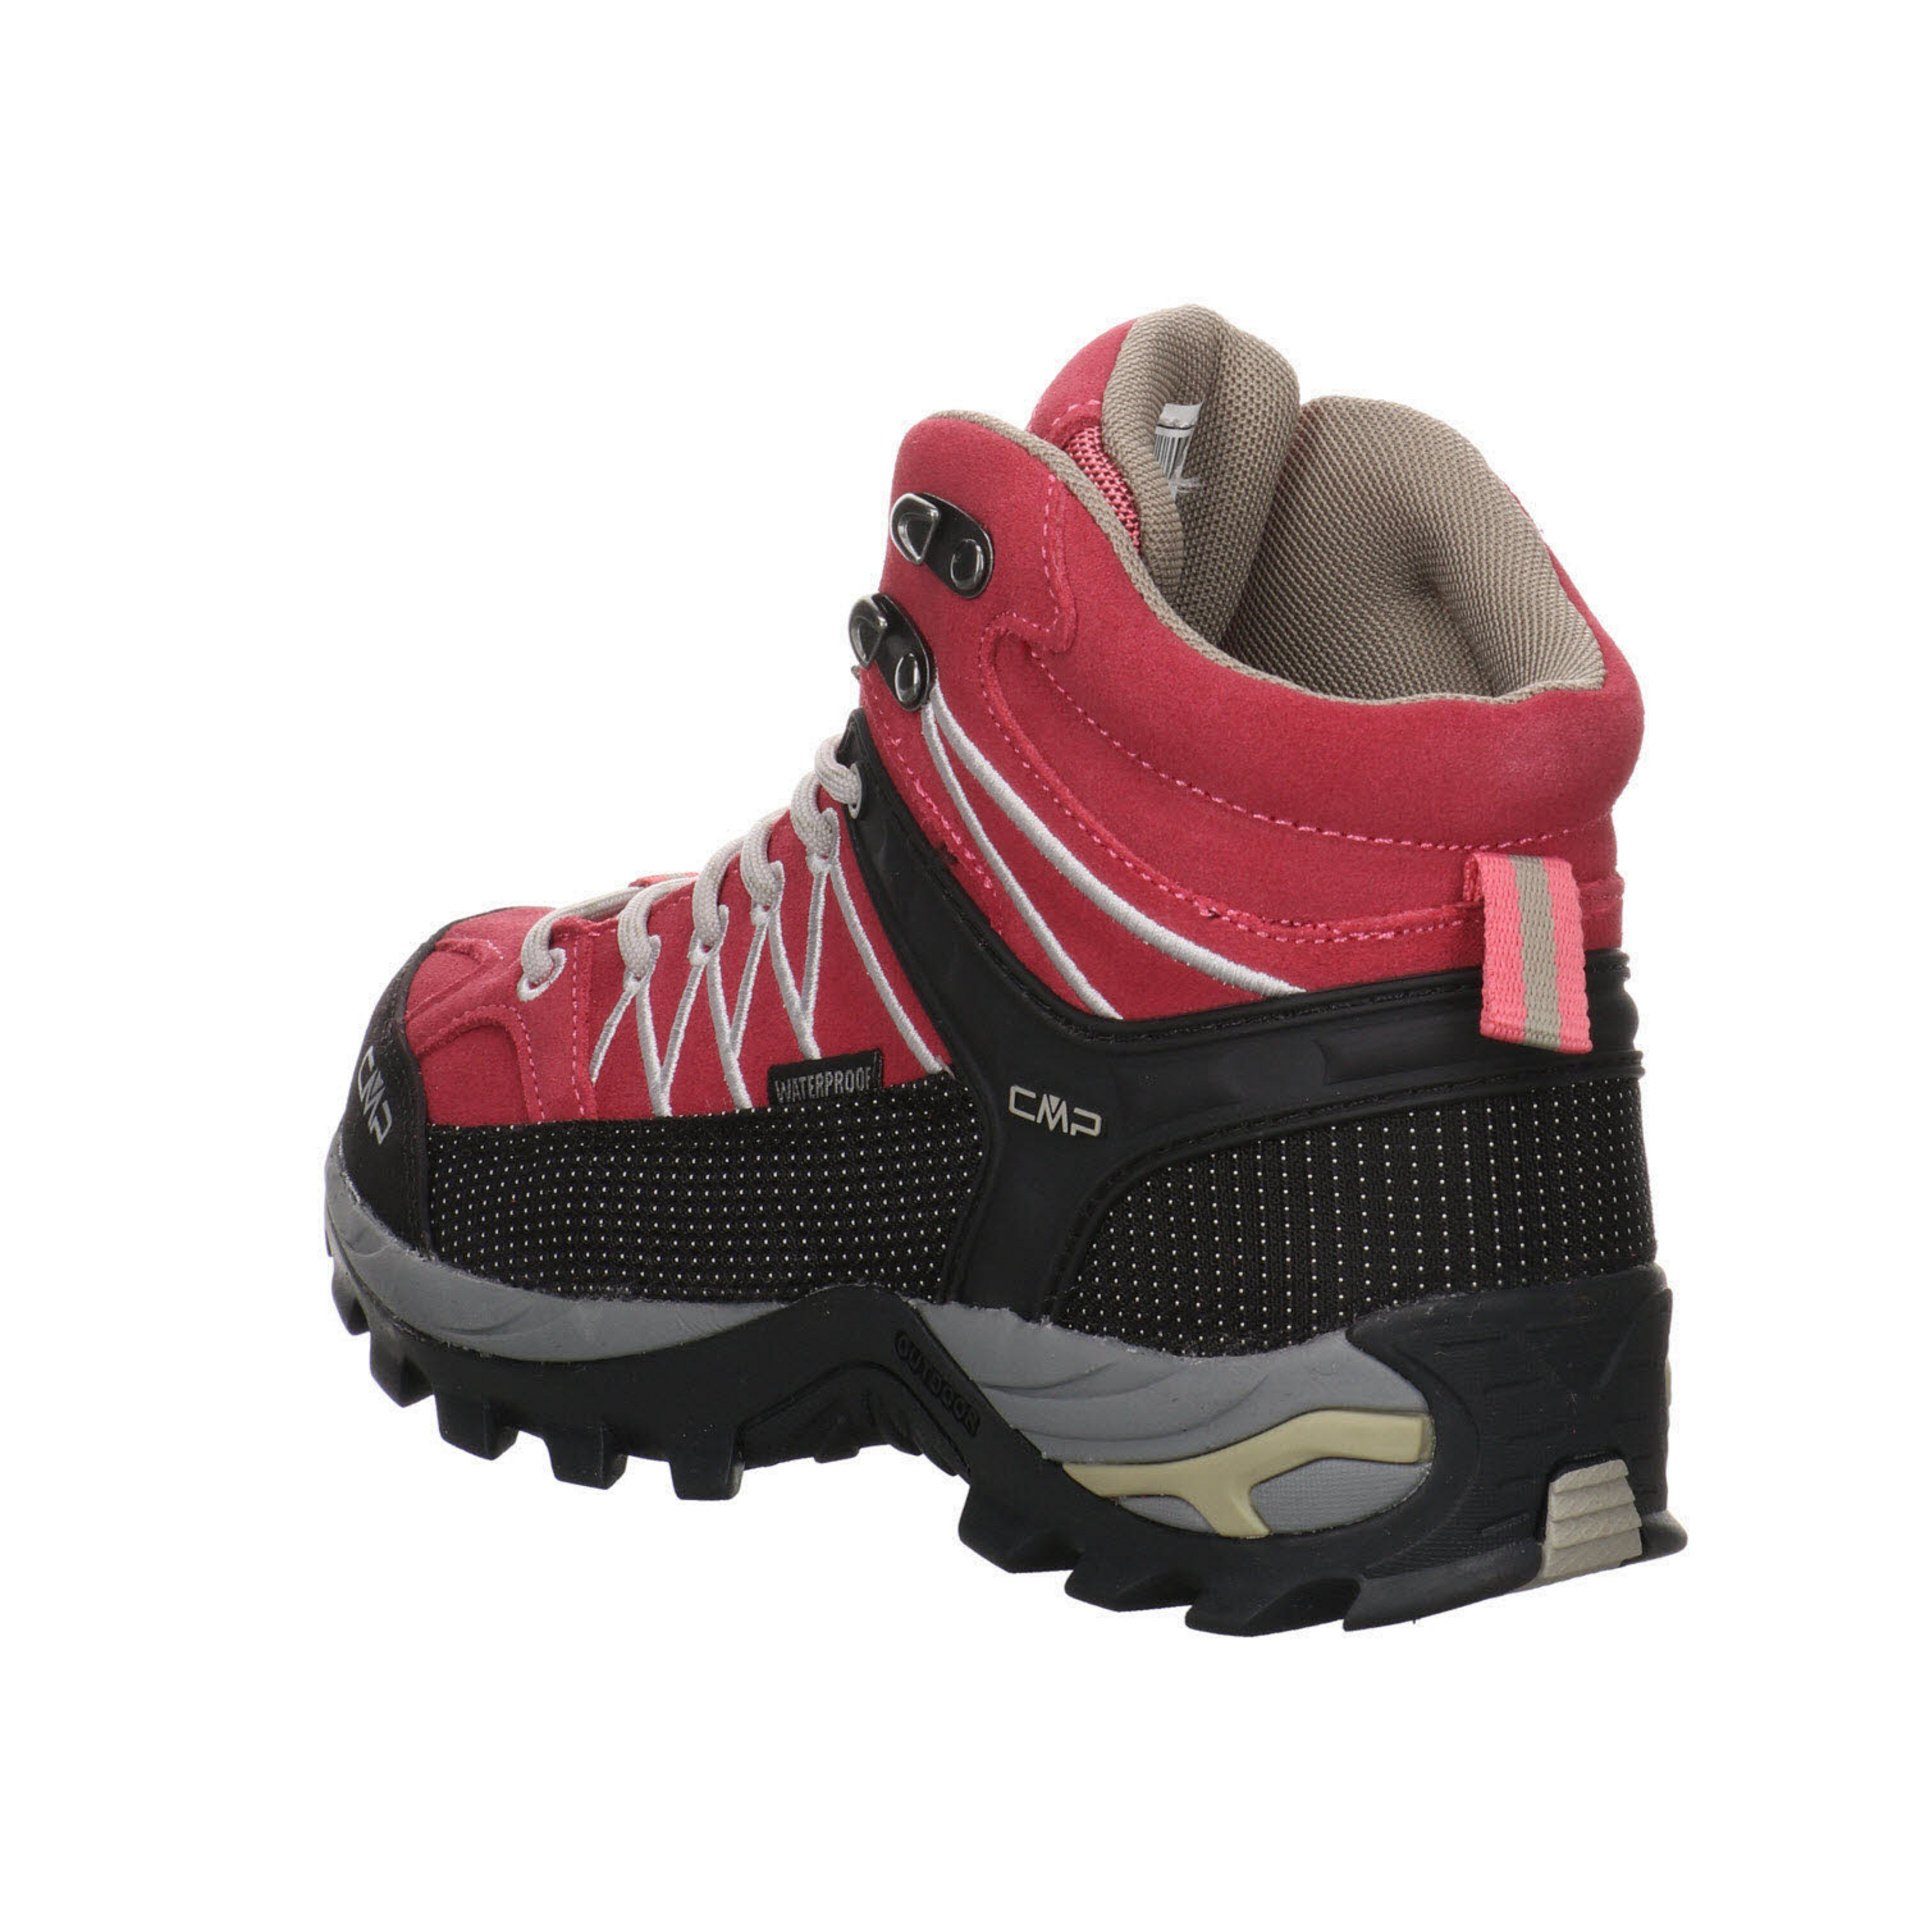 Rigel ROSE-SAND Outdoorschuh Damen Mid Schuhe CMP Outdoor Outdoorschuh Leder-/Textilkombination